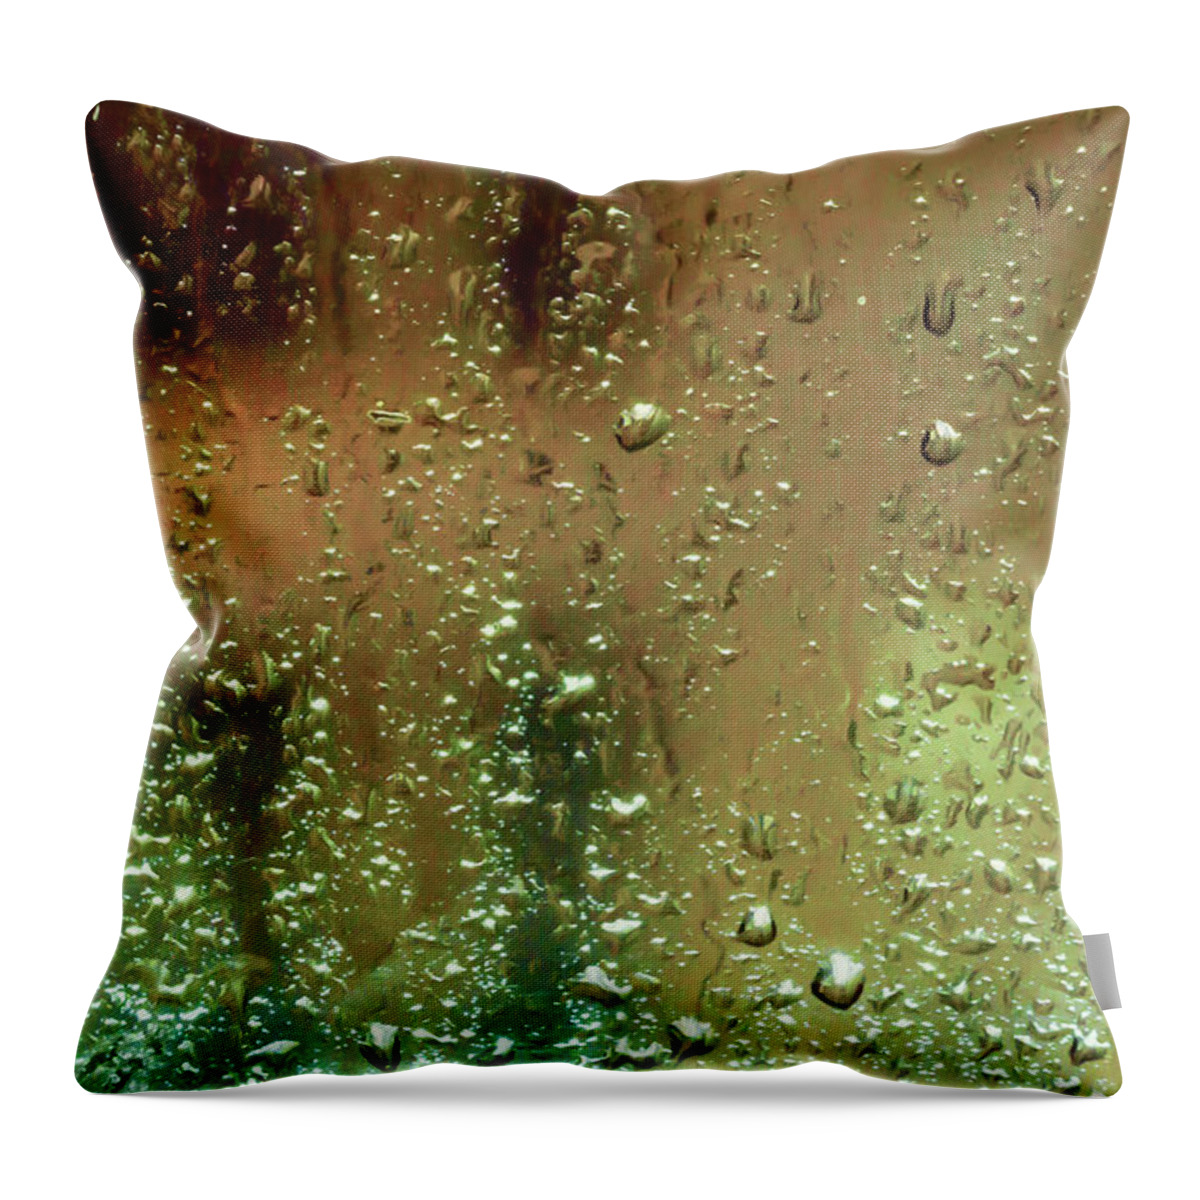 Misty Rain Throw Pillow featuring the photograph Misty Rain by Bonnie Follett